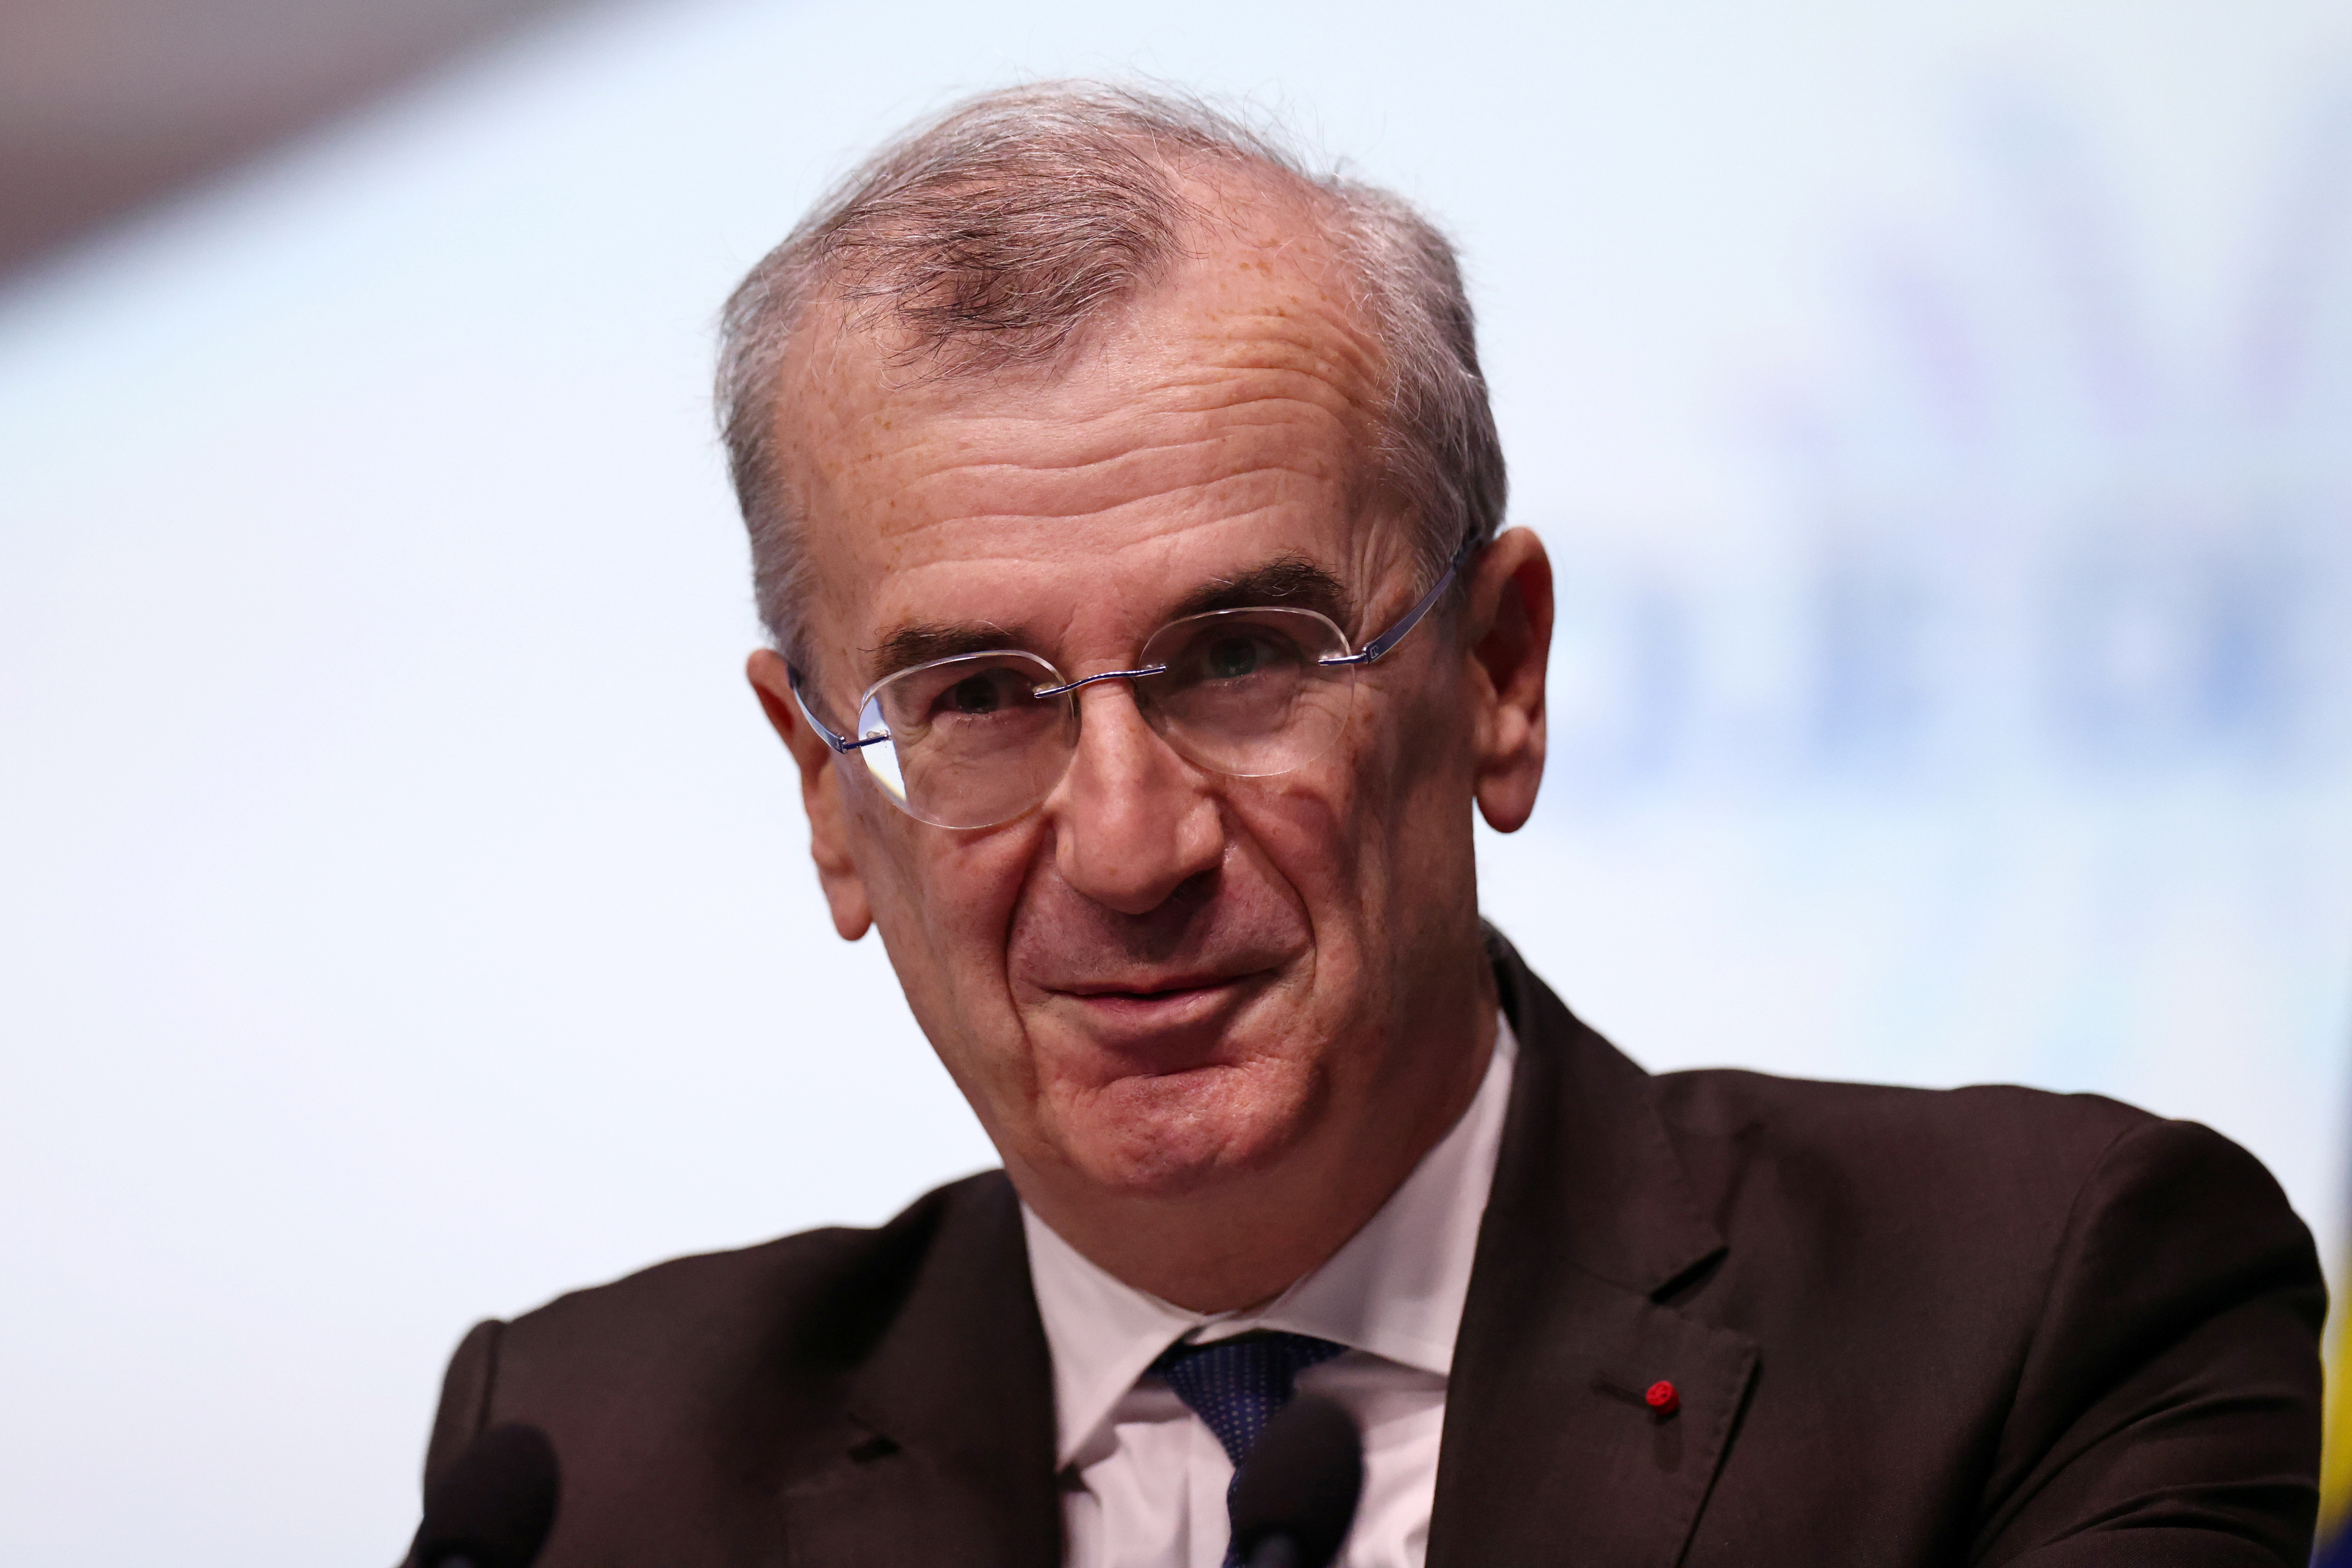 La hausse des taux profite aux banques françaises, souligne le gouverneur de la Banque de France